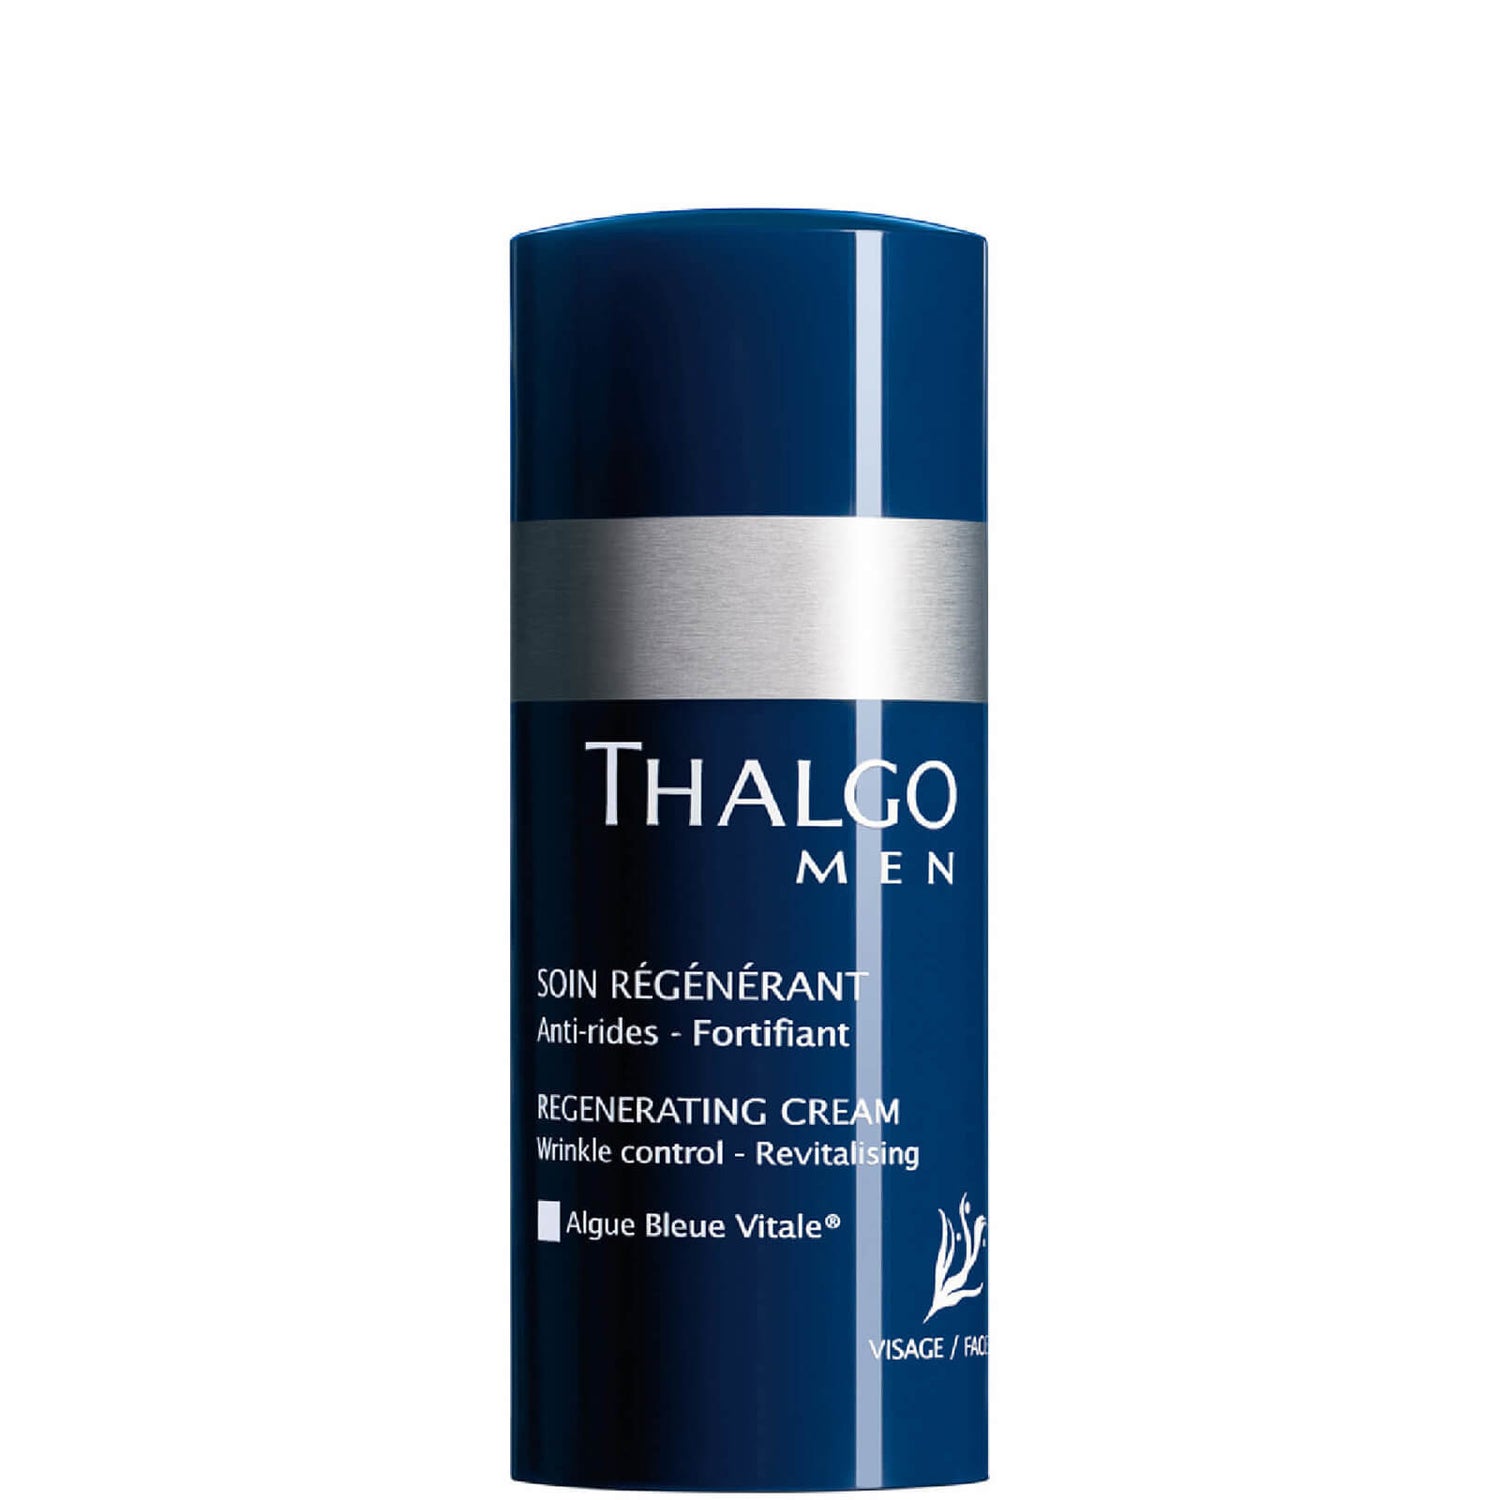 Thalgo Men Regenerating Cream (50ml)